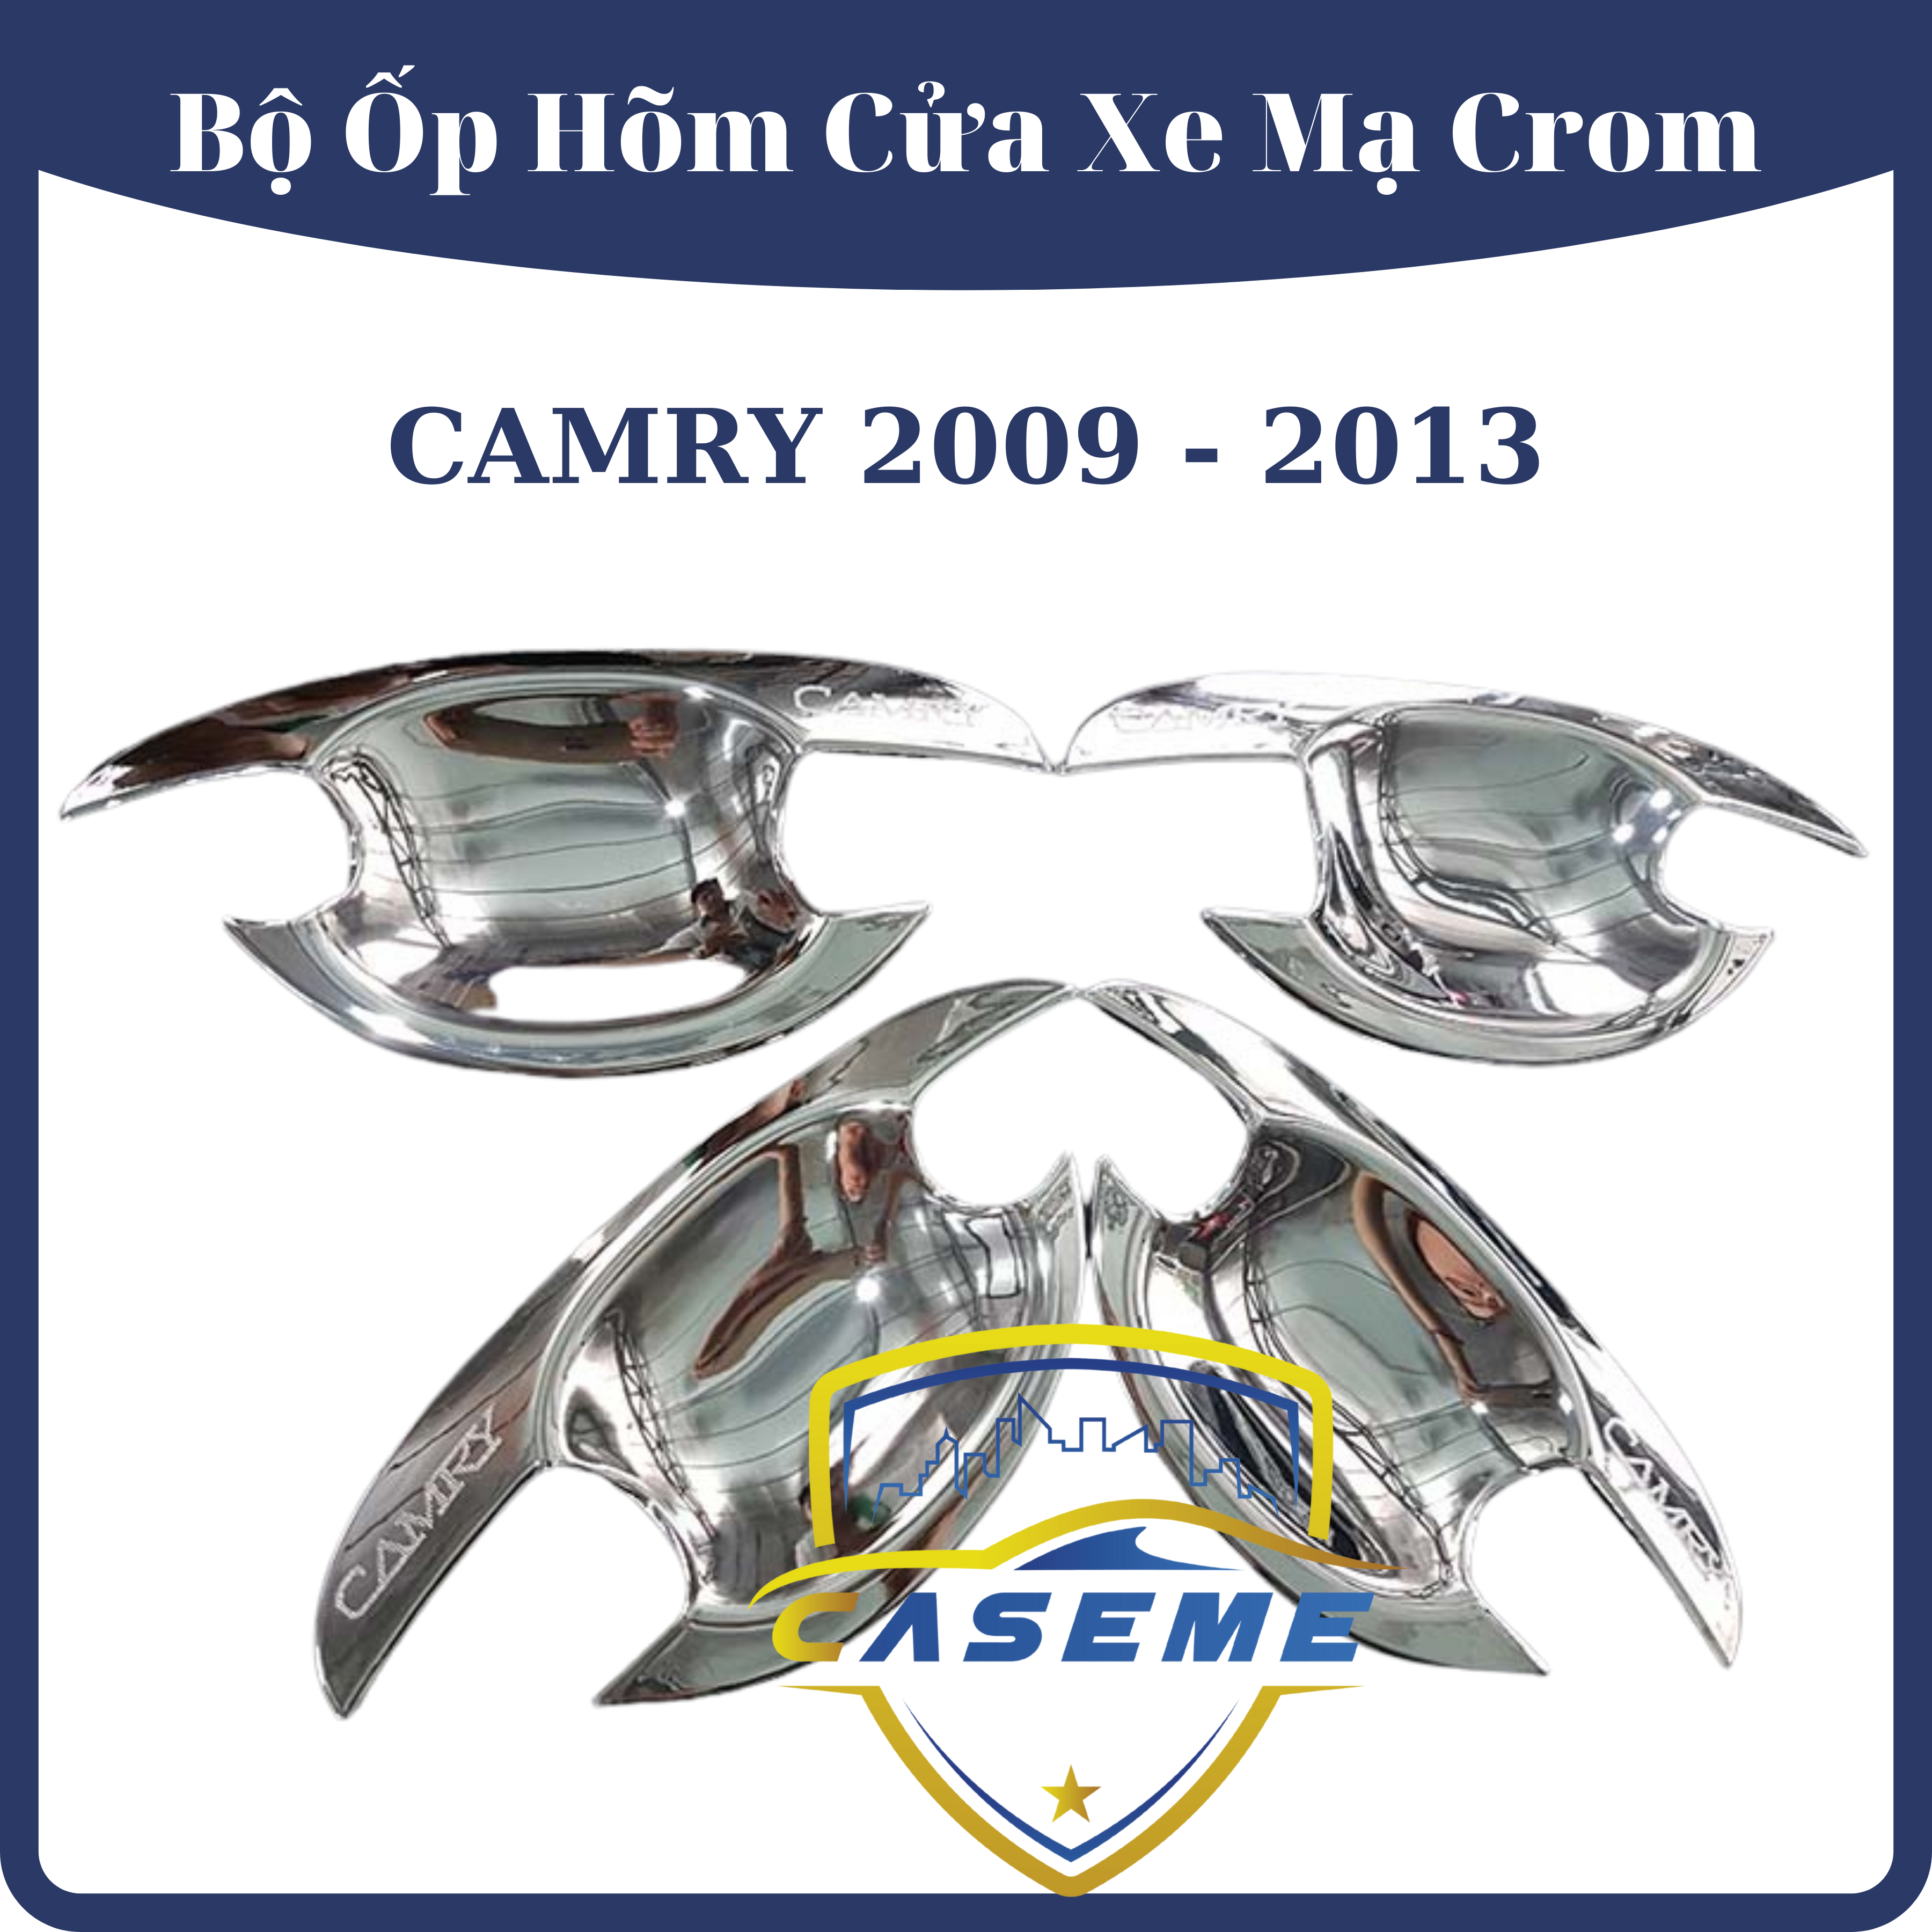 Hình ảnh Ốp hõm cửa xe Toyota Camry 2009 - 2013 mạ Crom